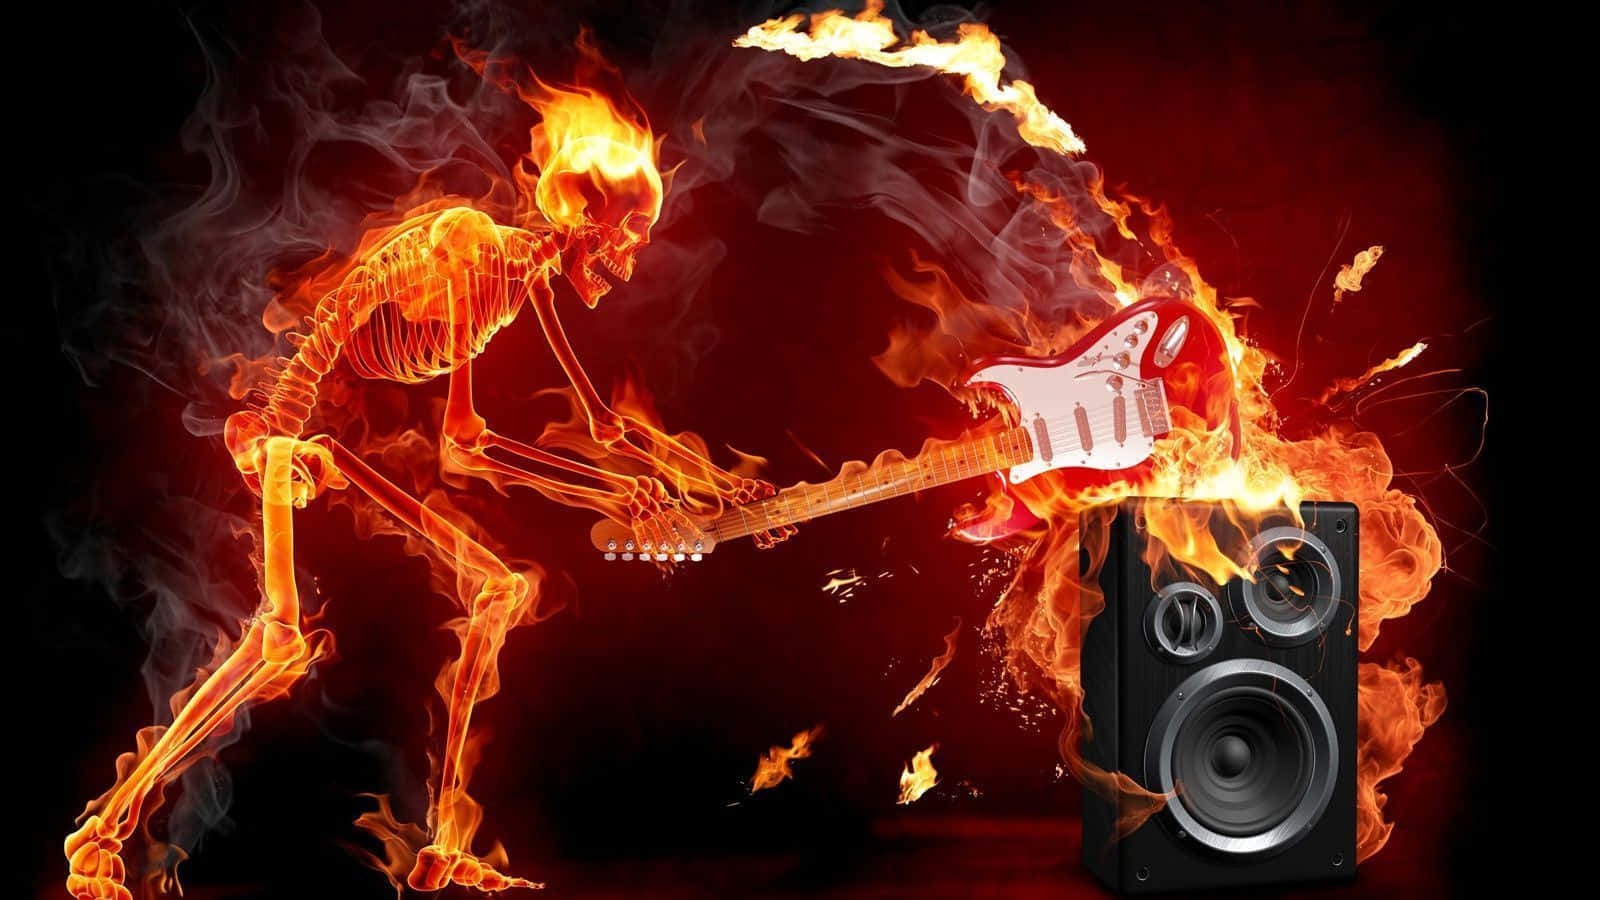 Einskelett, Das In Den Flammen Eine E-gitarre Spielt. Wallpaper